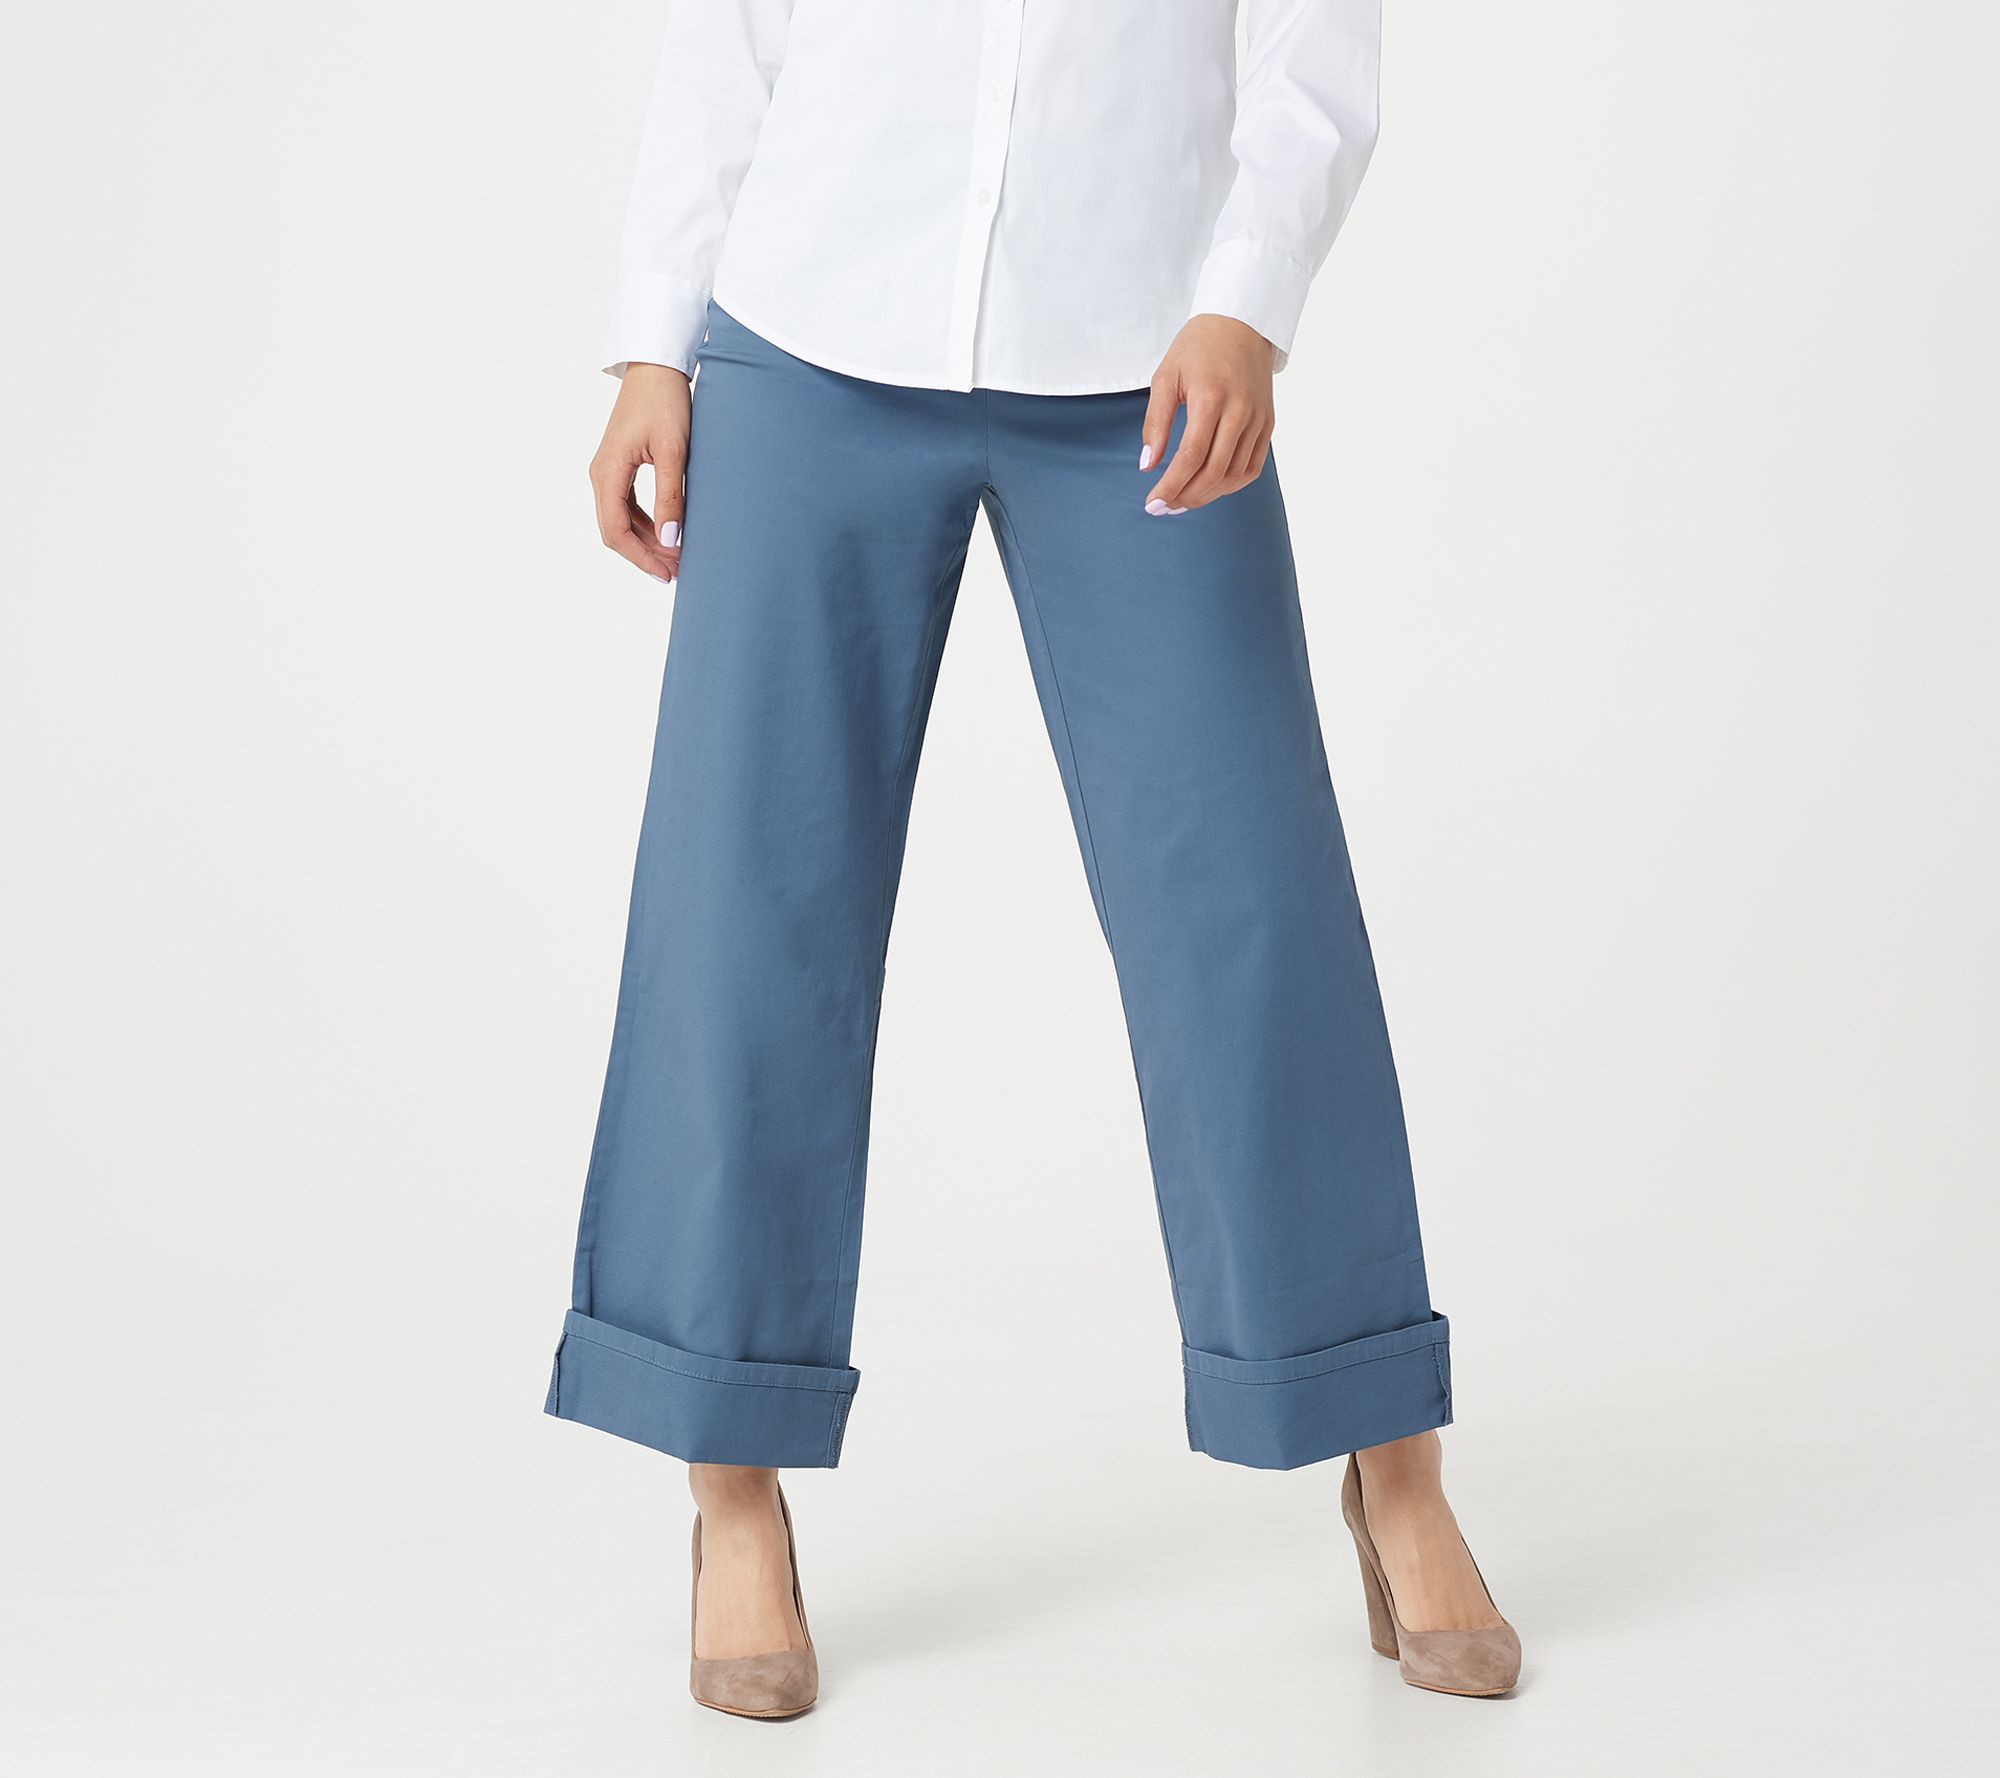 Martha Stewart Regular Chino WideLeg Cuffed Pants